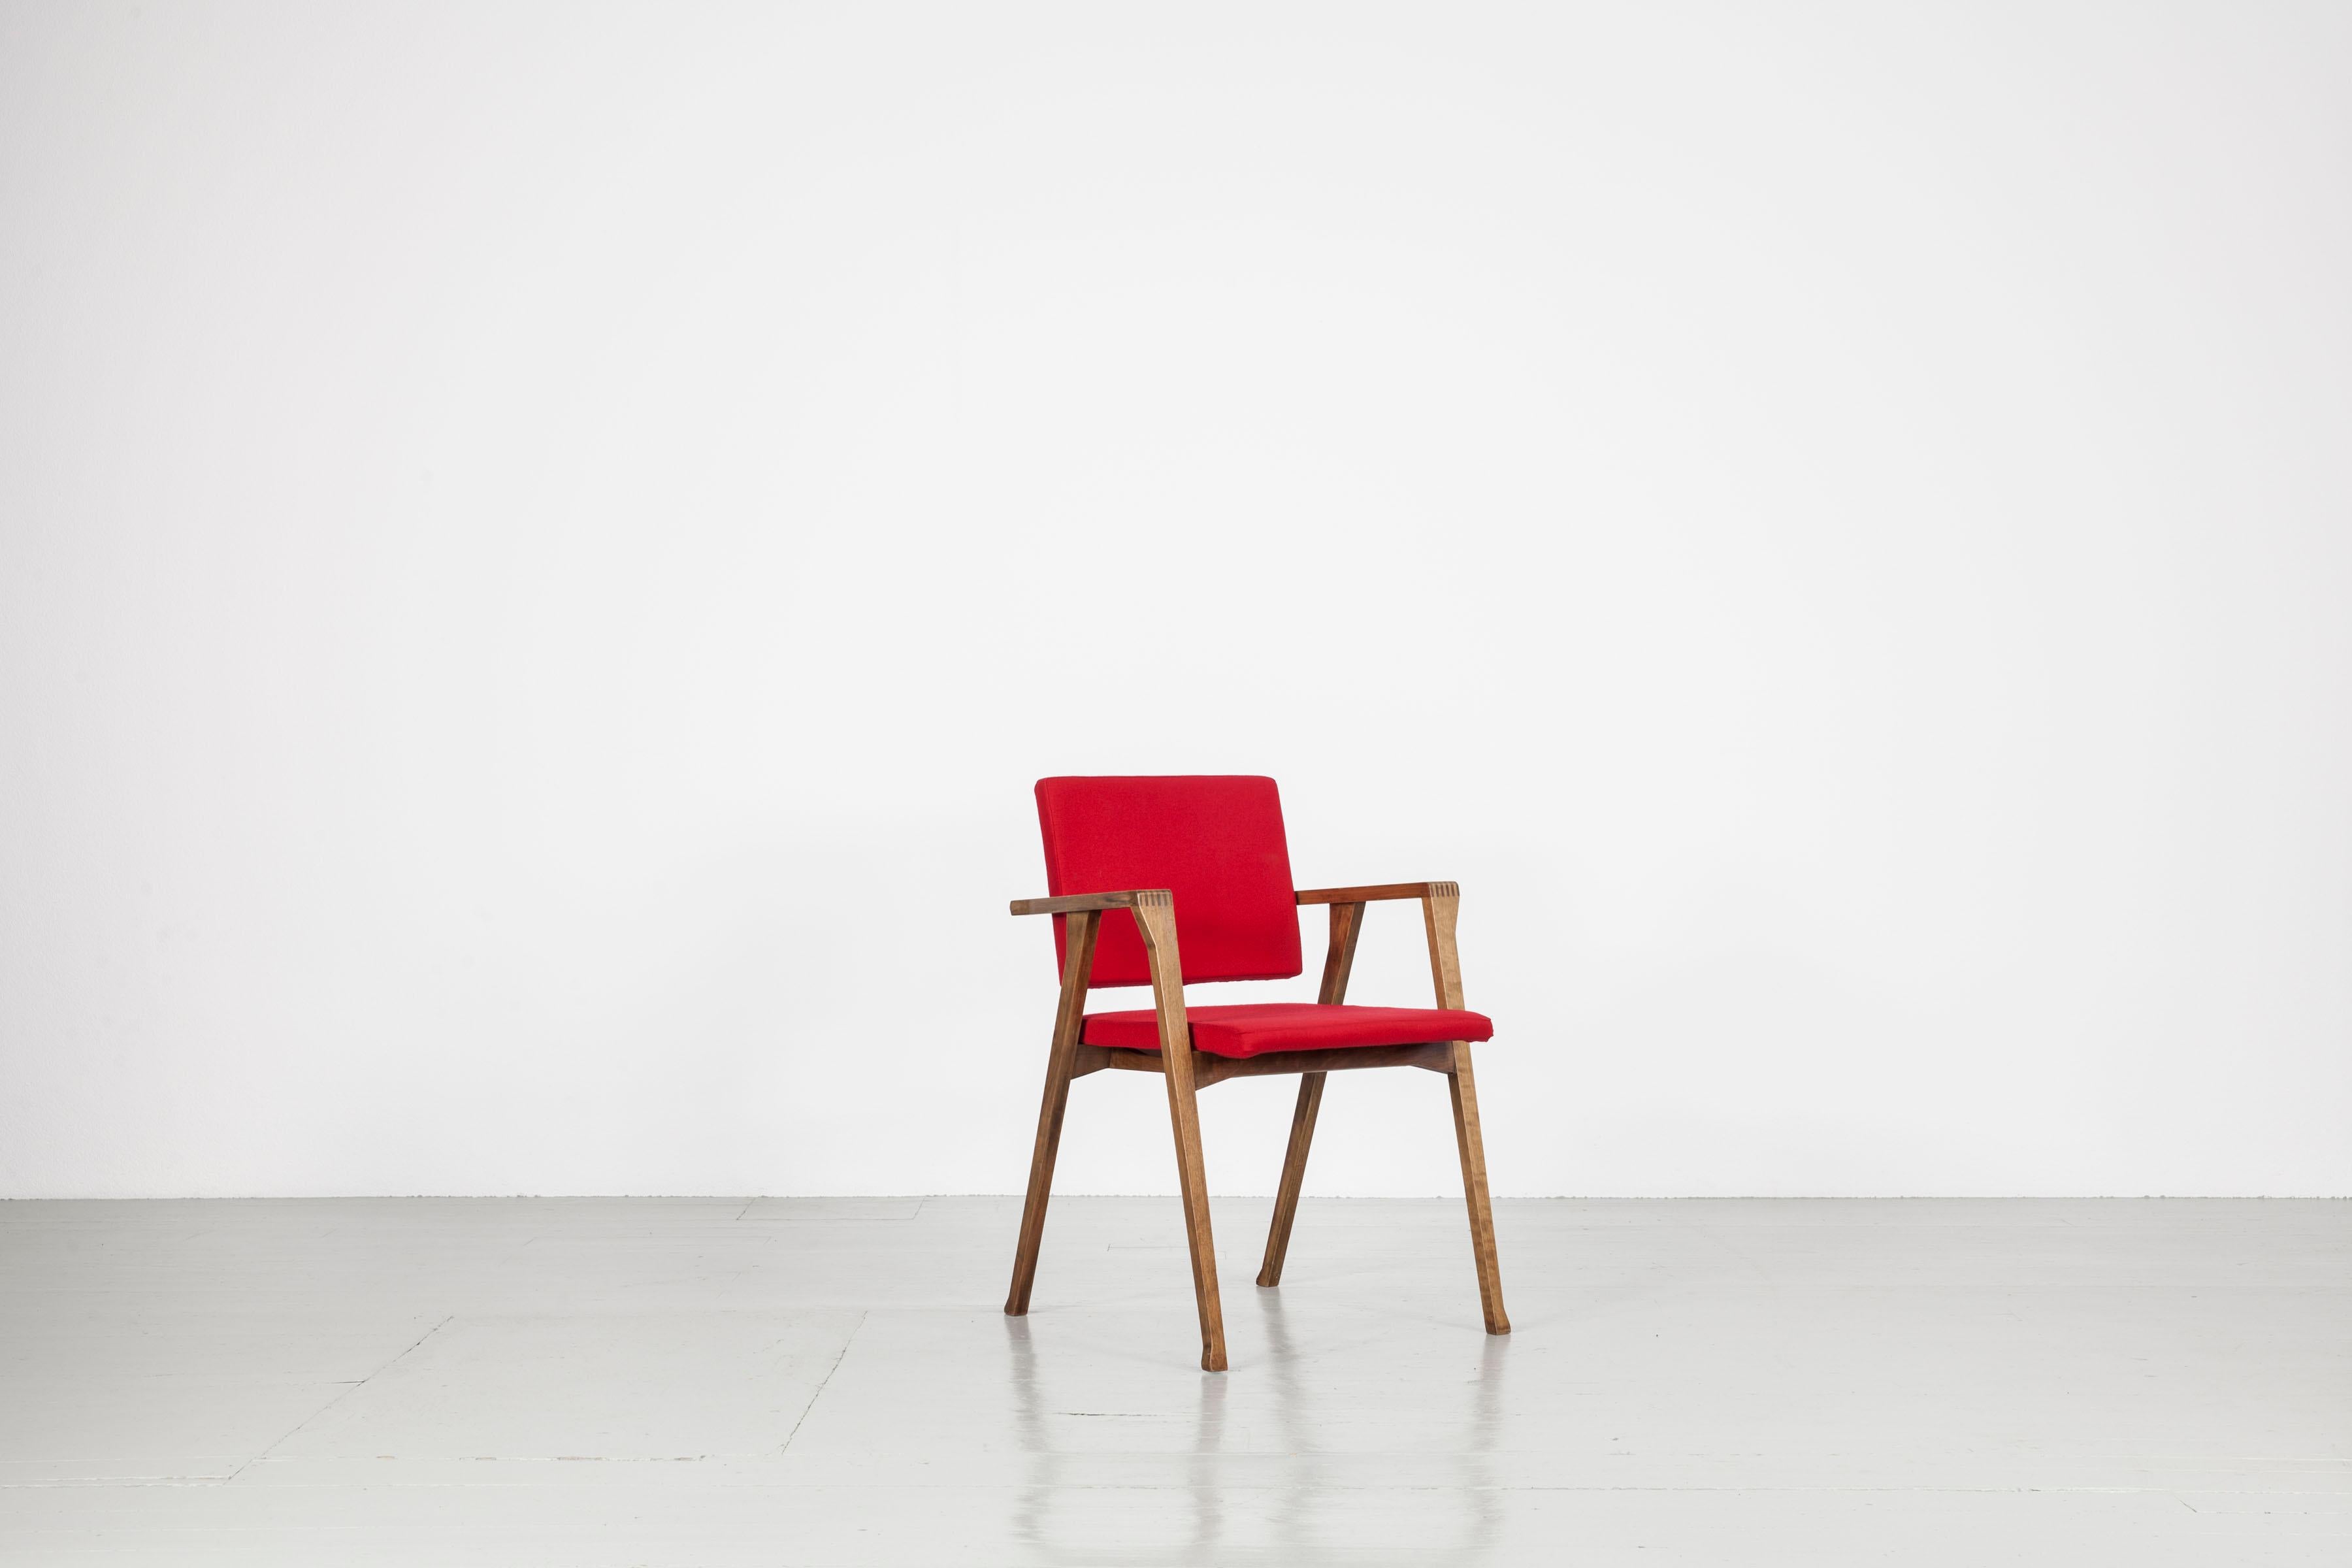 Cet ensemble de deux chaises italiennes a été conçu par Franco Albini pour Poggi dans les années 1950. Le modèle 